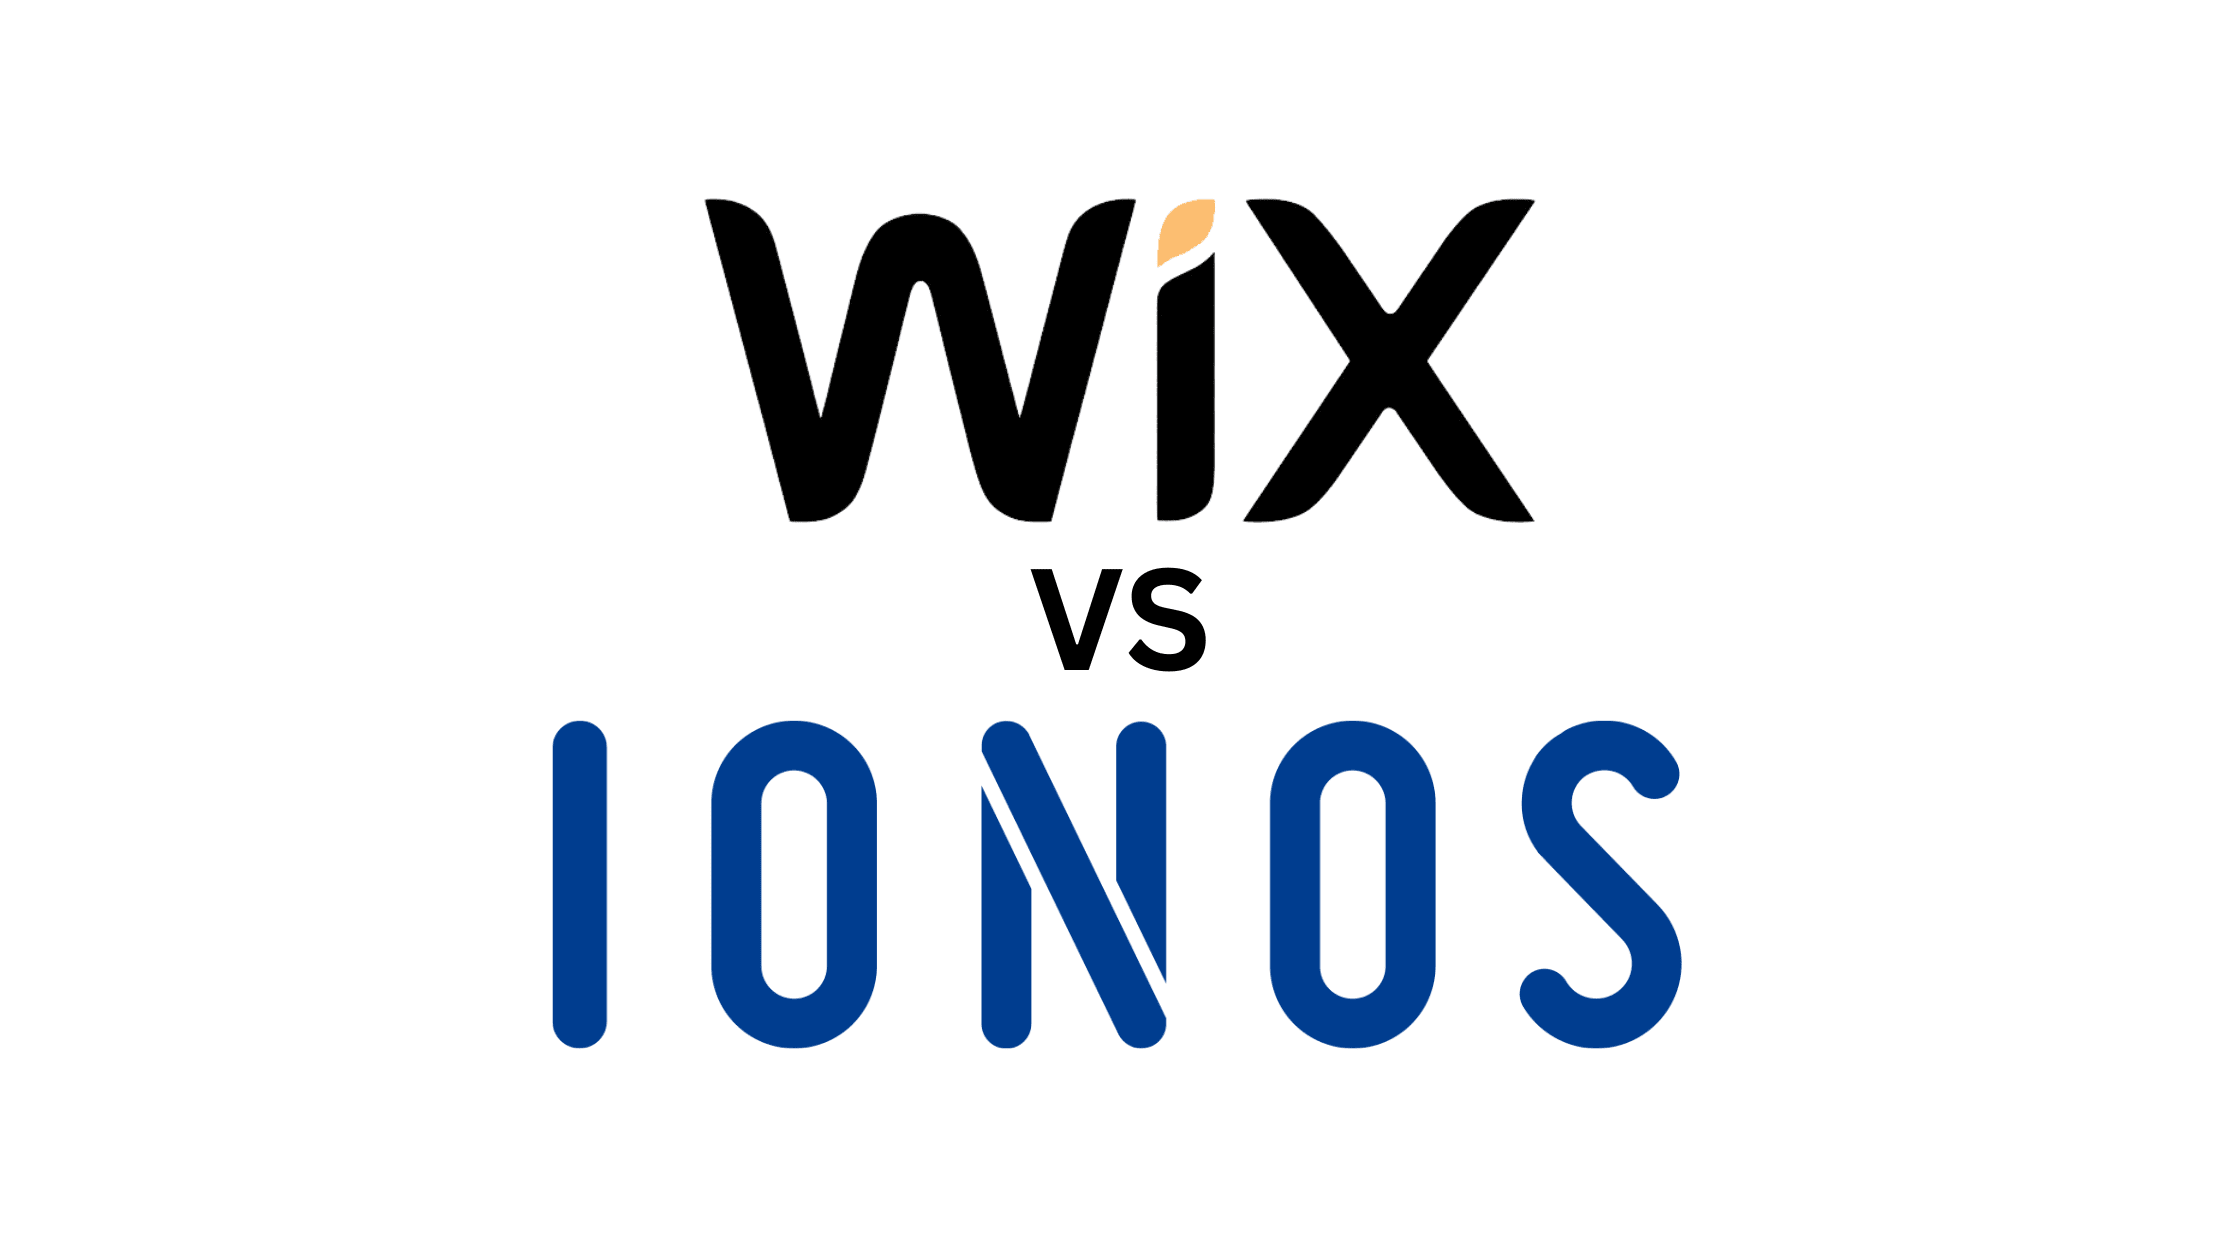 Ionos vs Wix